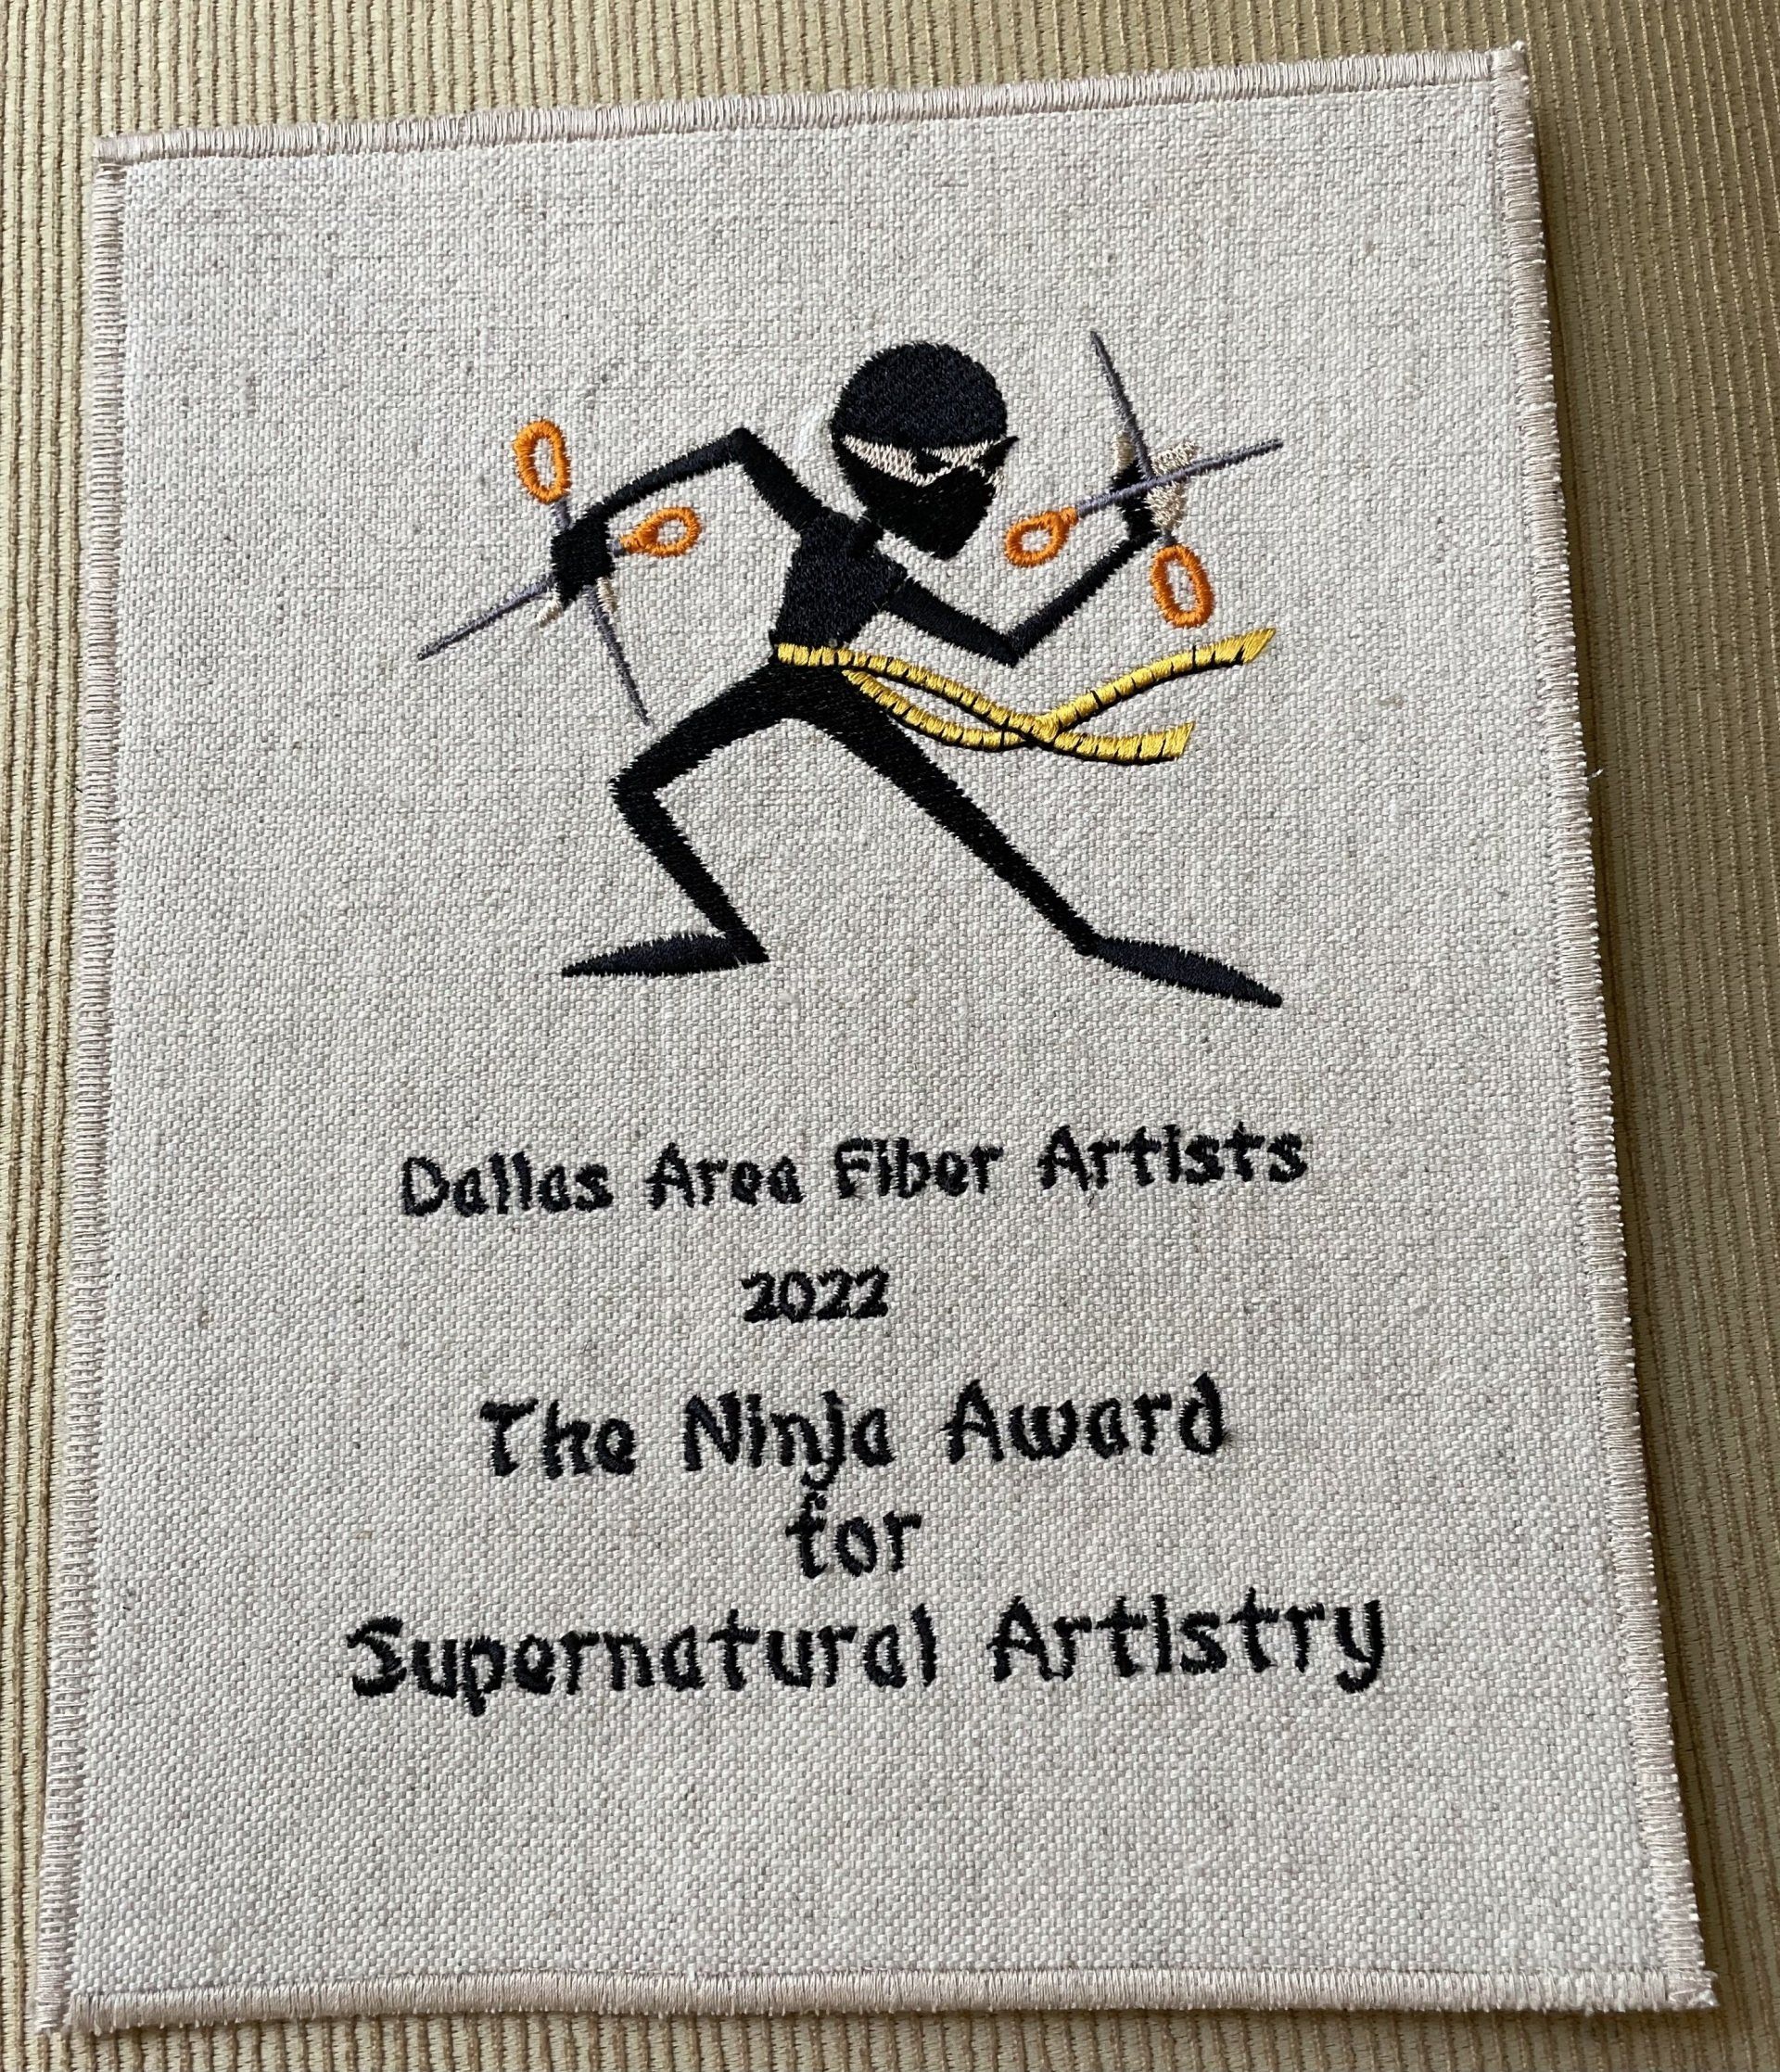 Ninja Award for Carolyn Skei by Lu Peters, 2022.